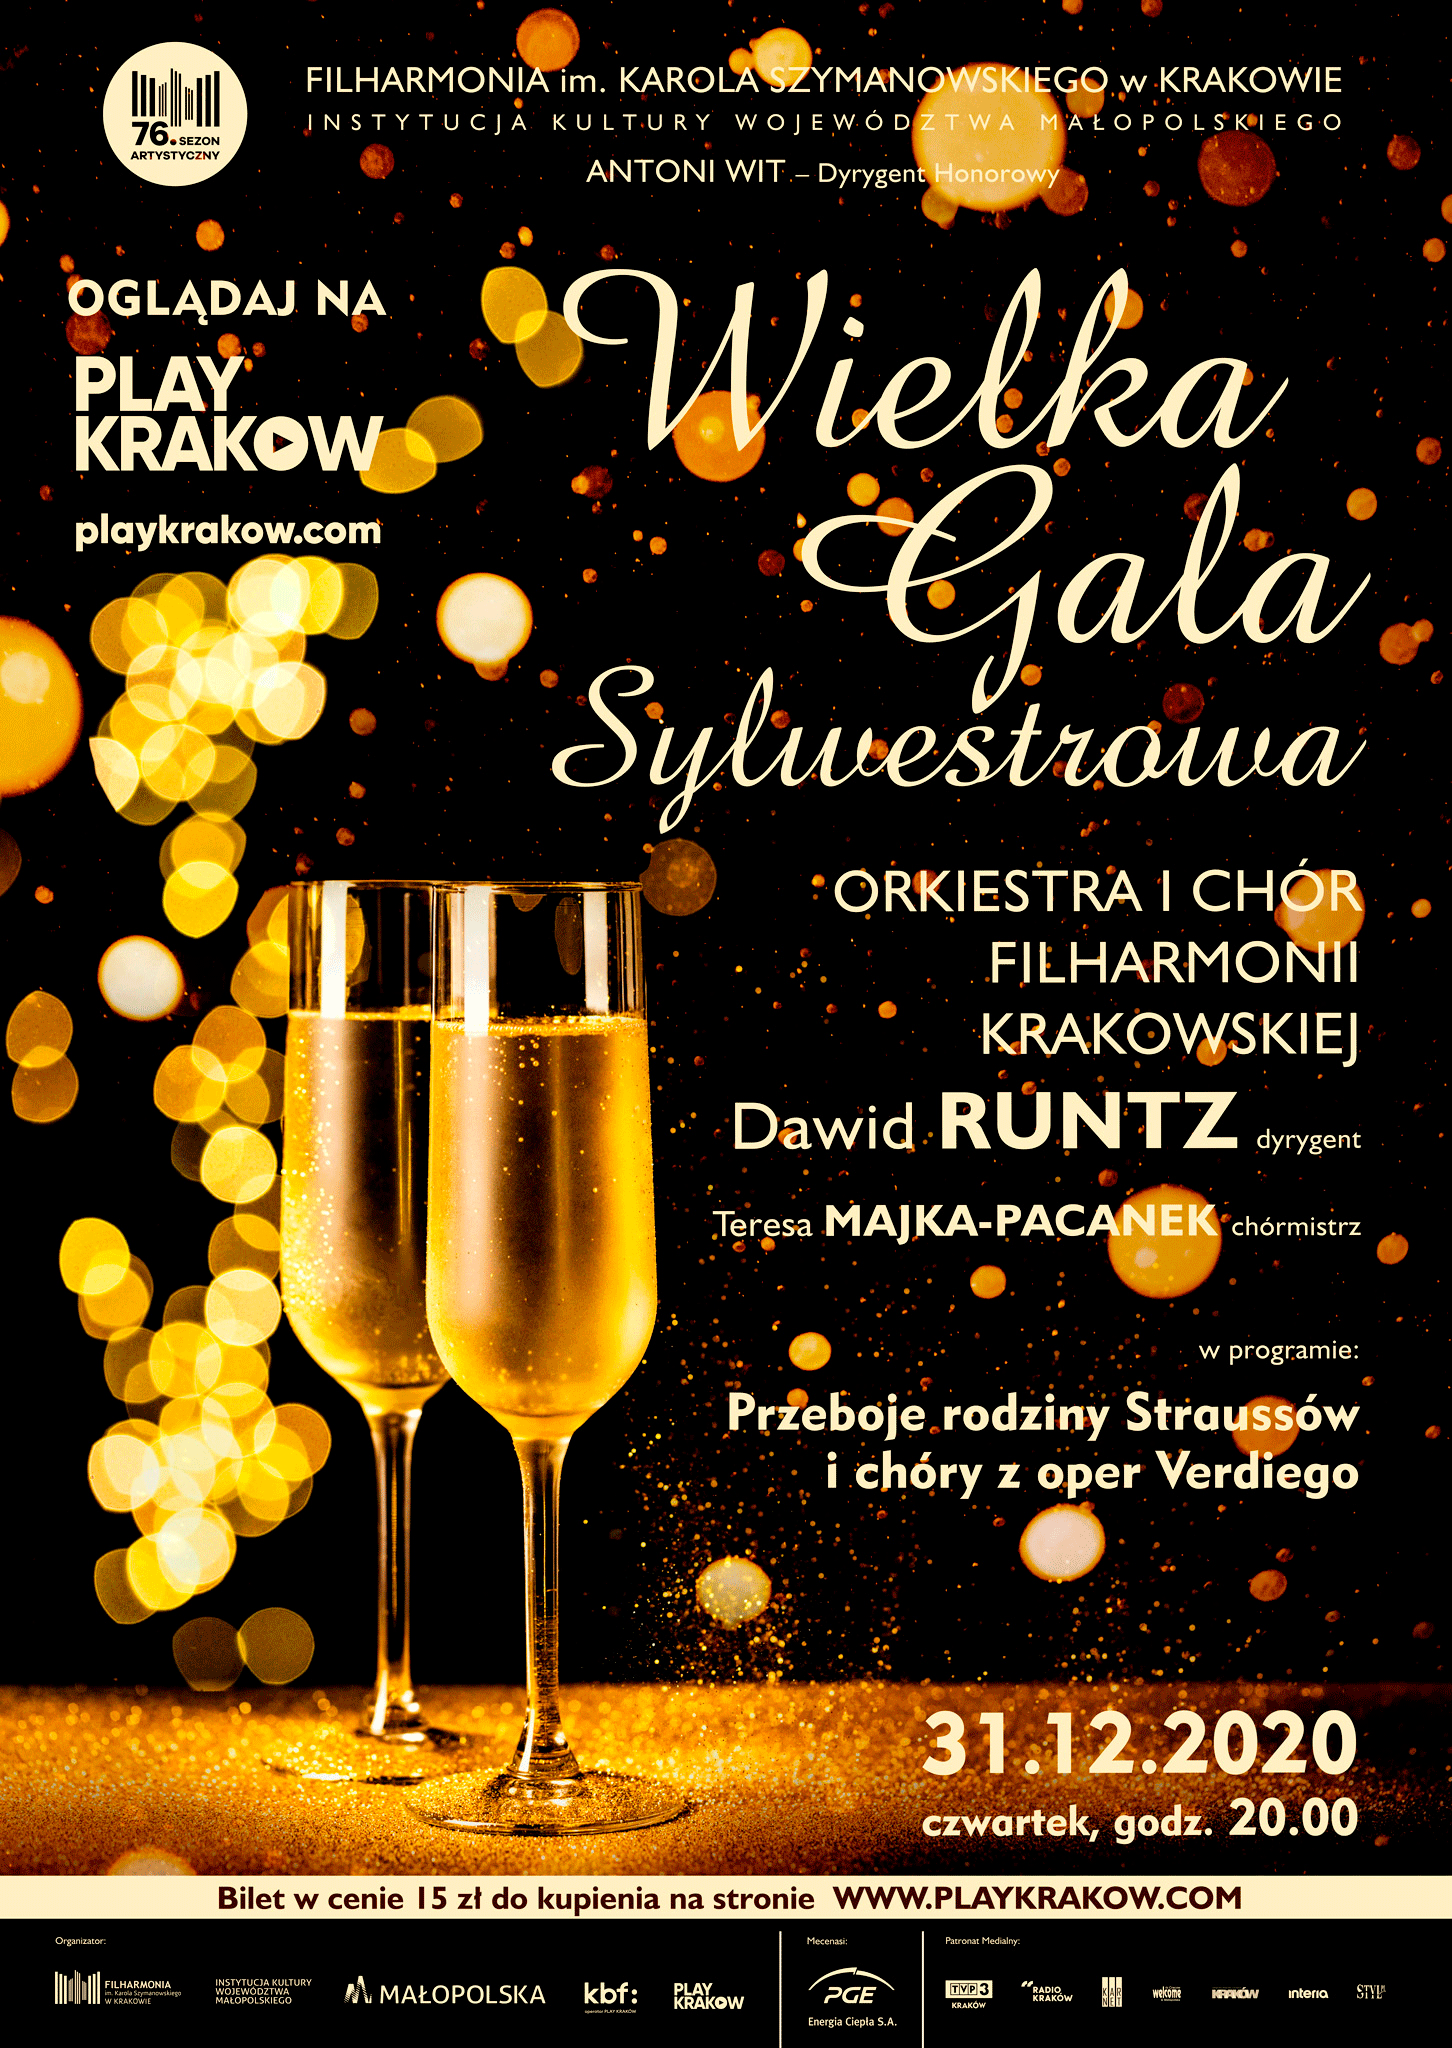 Koncert Sylwestrowy w Filharmonii Krakowskiej. Plakat promujący wydarzenie.